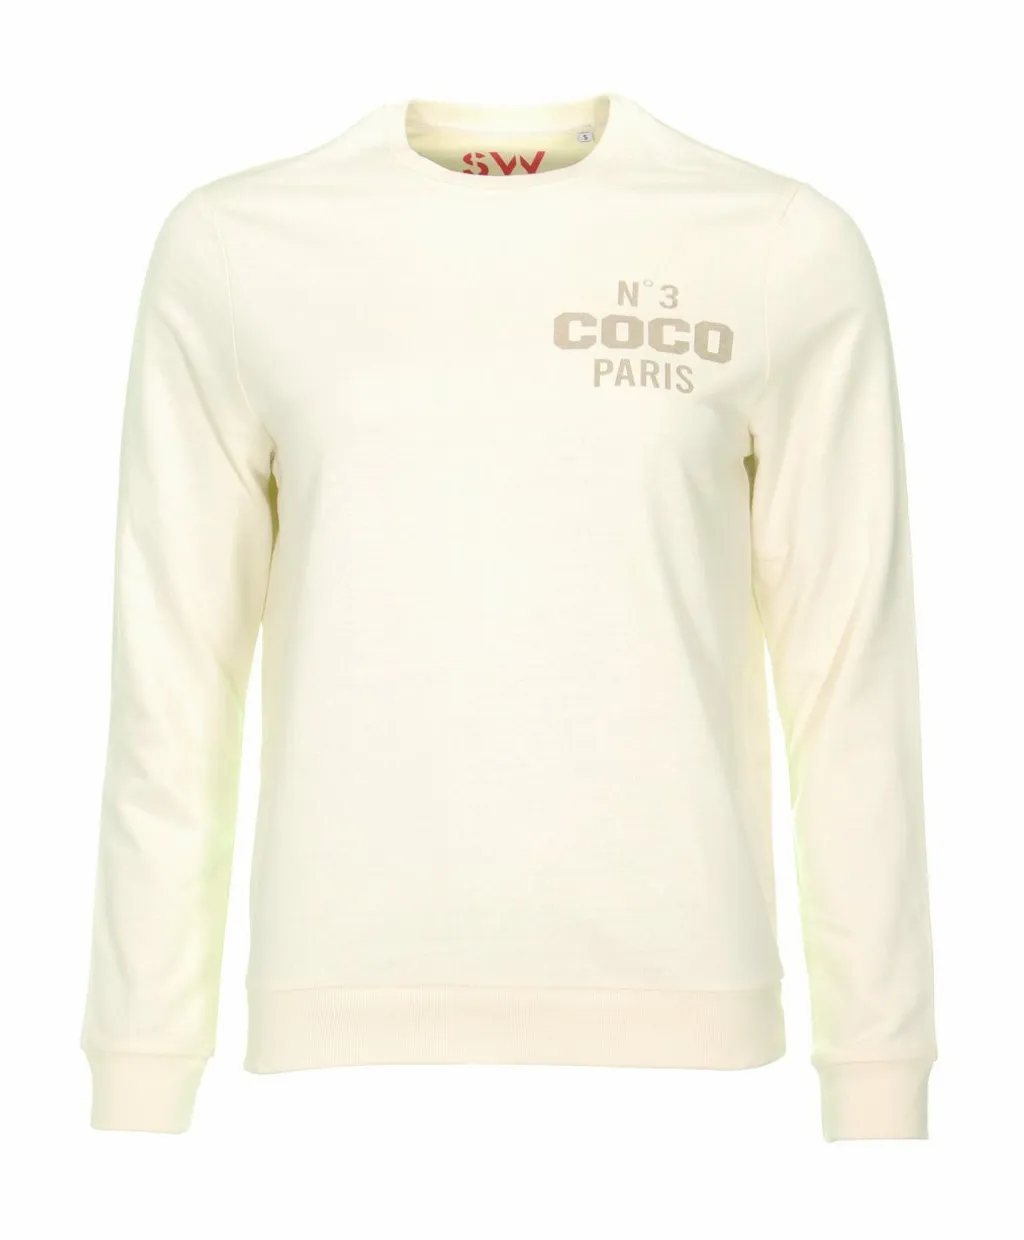 Coco sweater off white